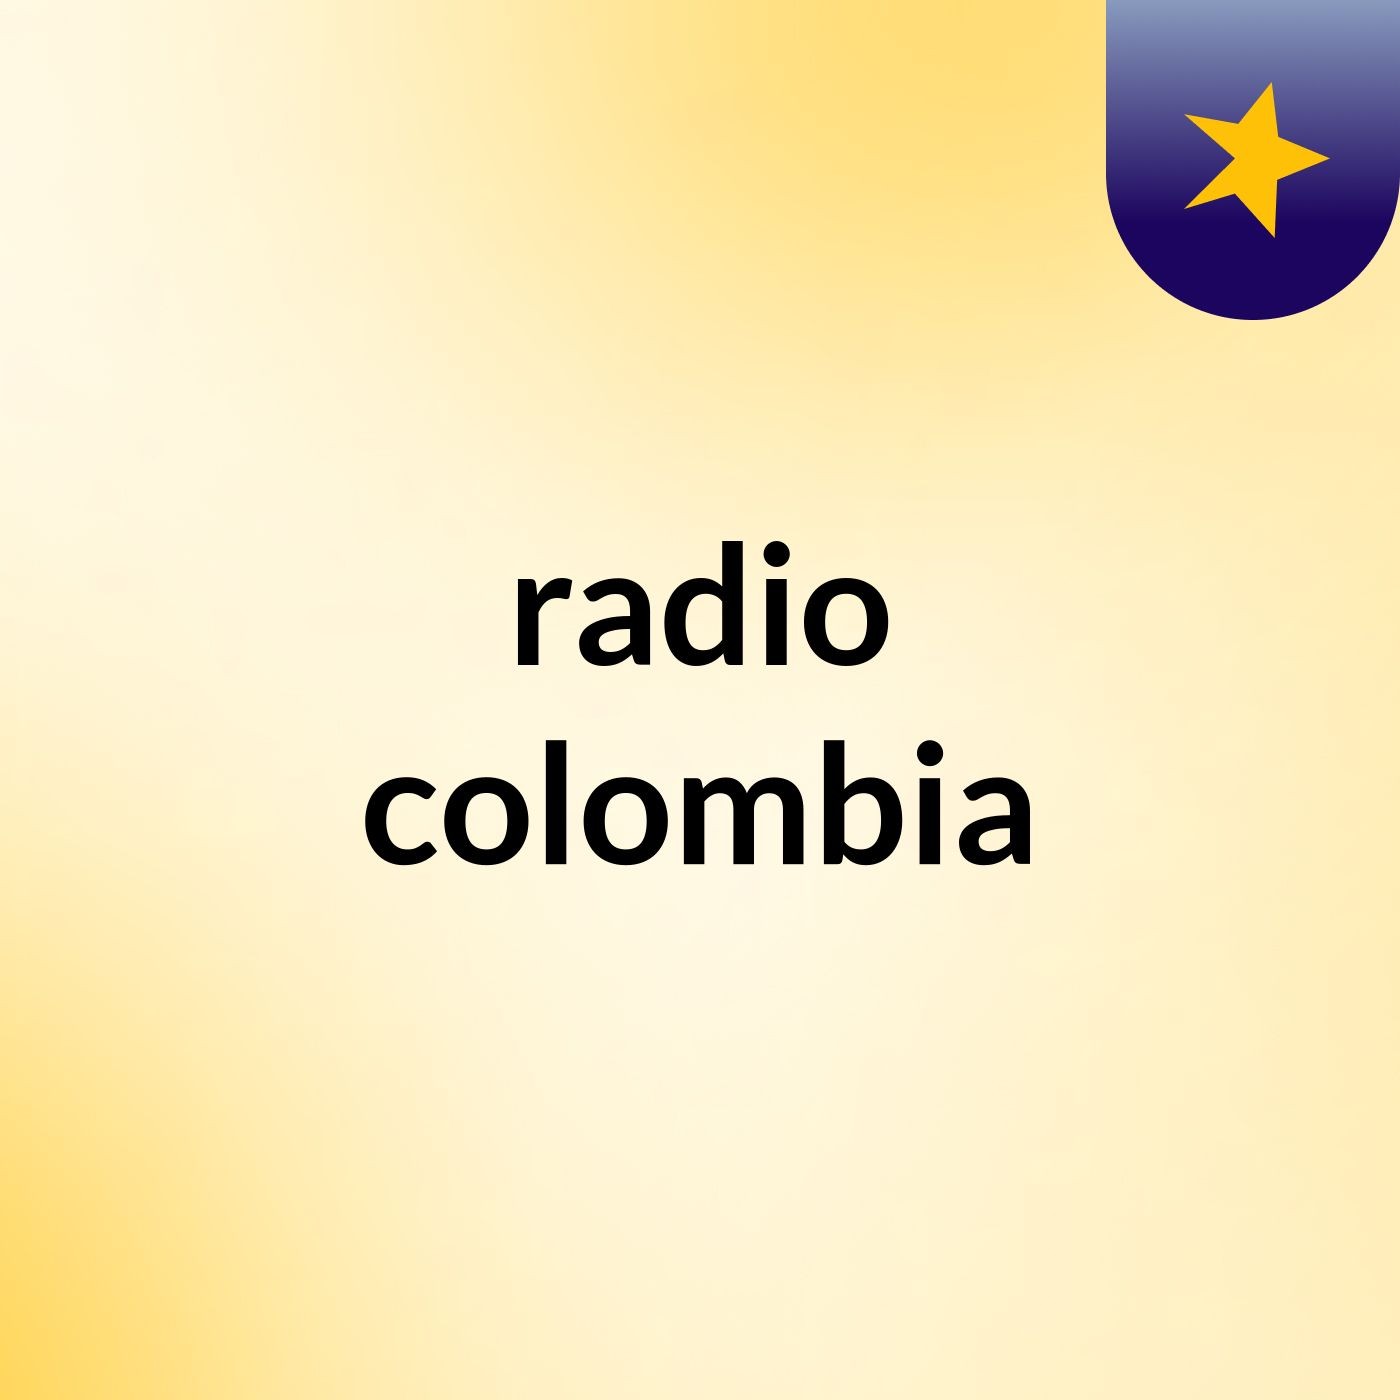 radio colombia